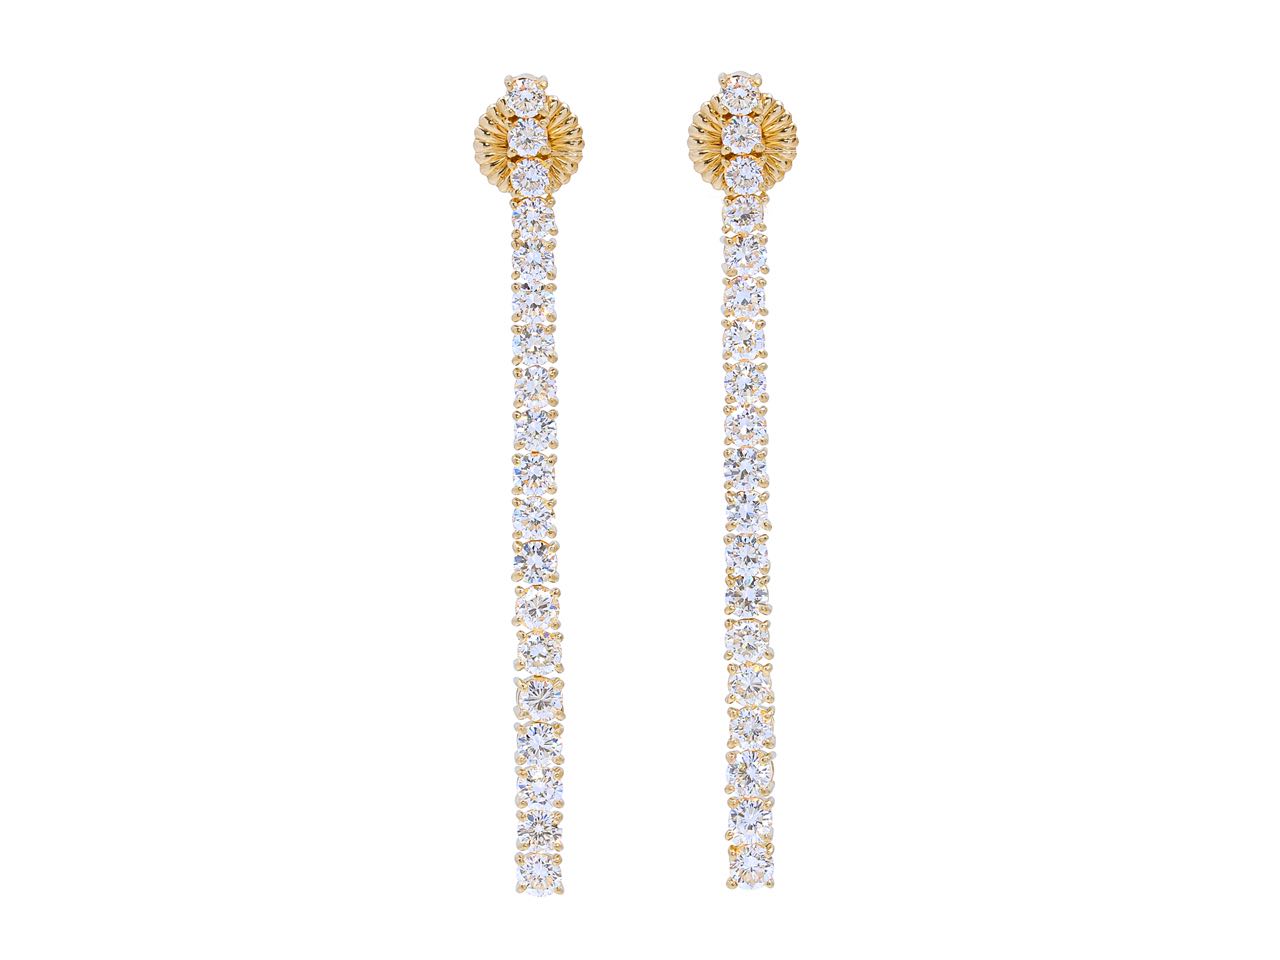 Beladora 'Bespoke' Diamond Line Earrings in 18K Gold